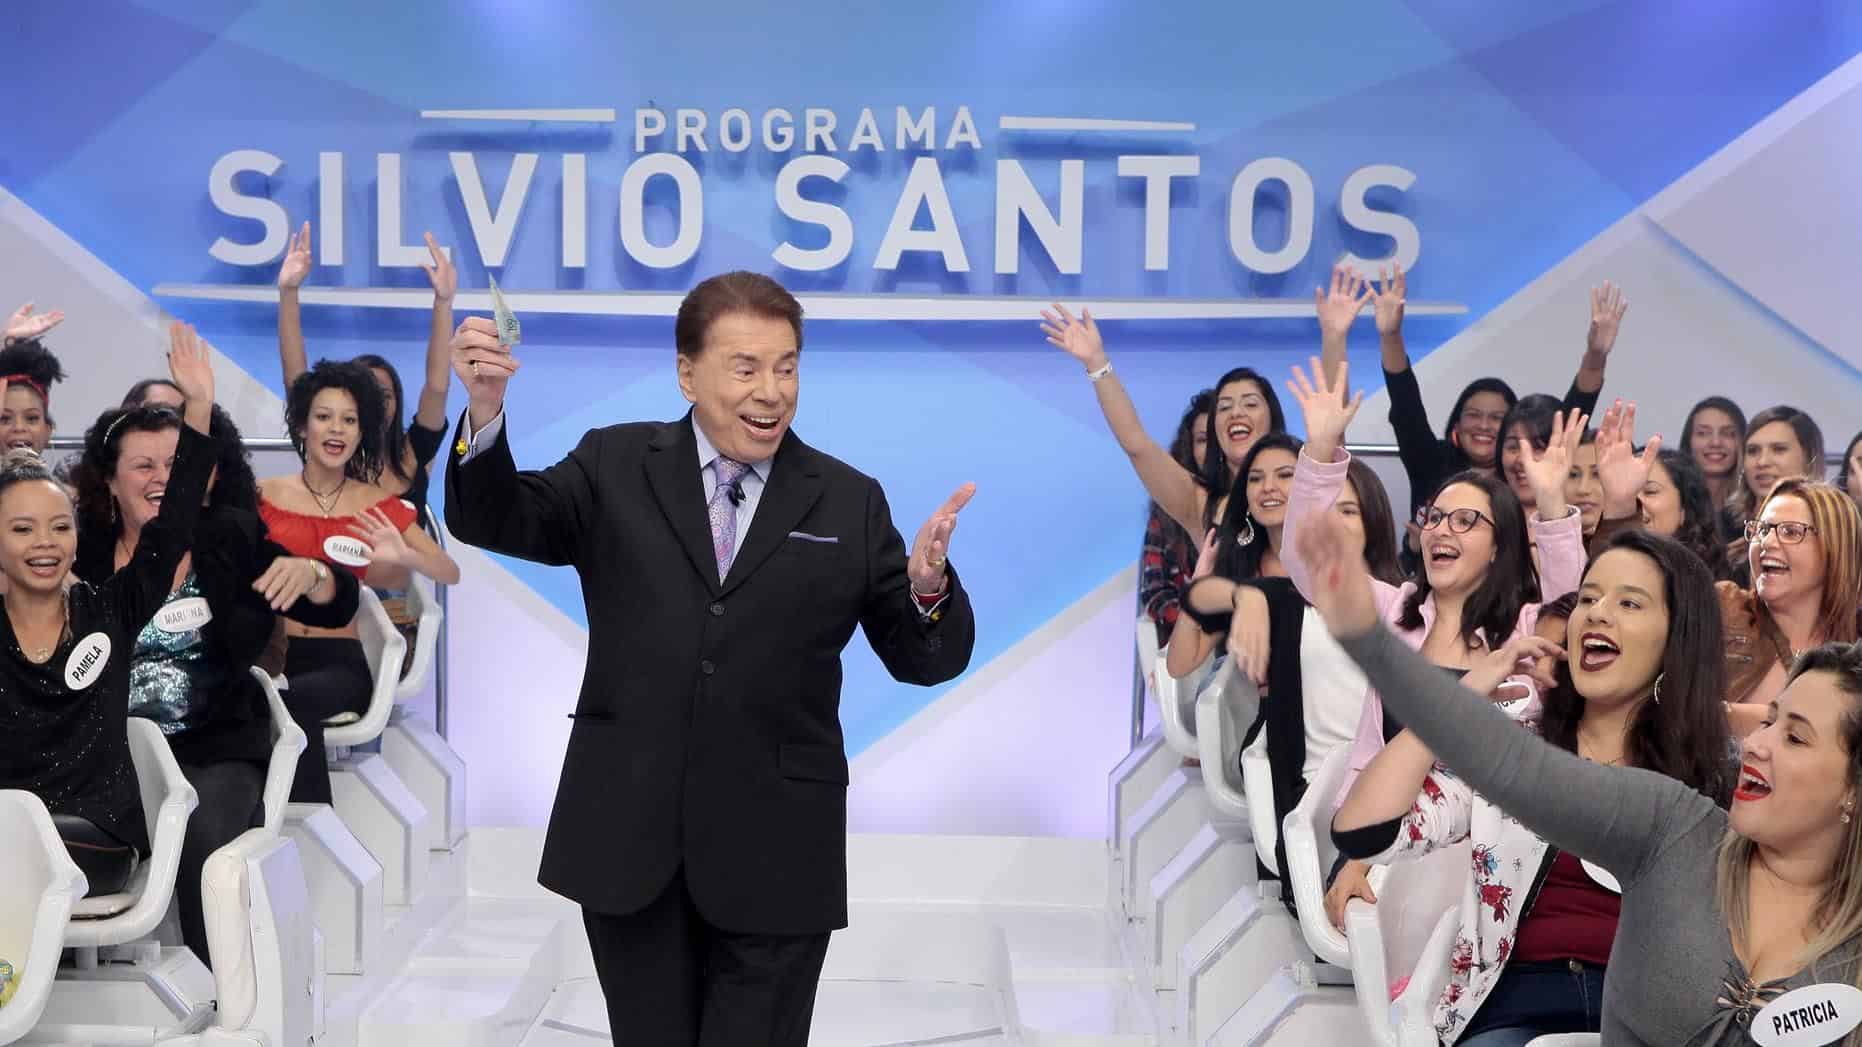 Silvio Santos comemora audiência de “As Aventuras de Poliana” e revela recado à esposa